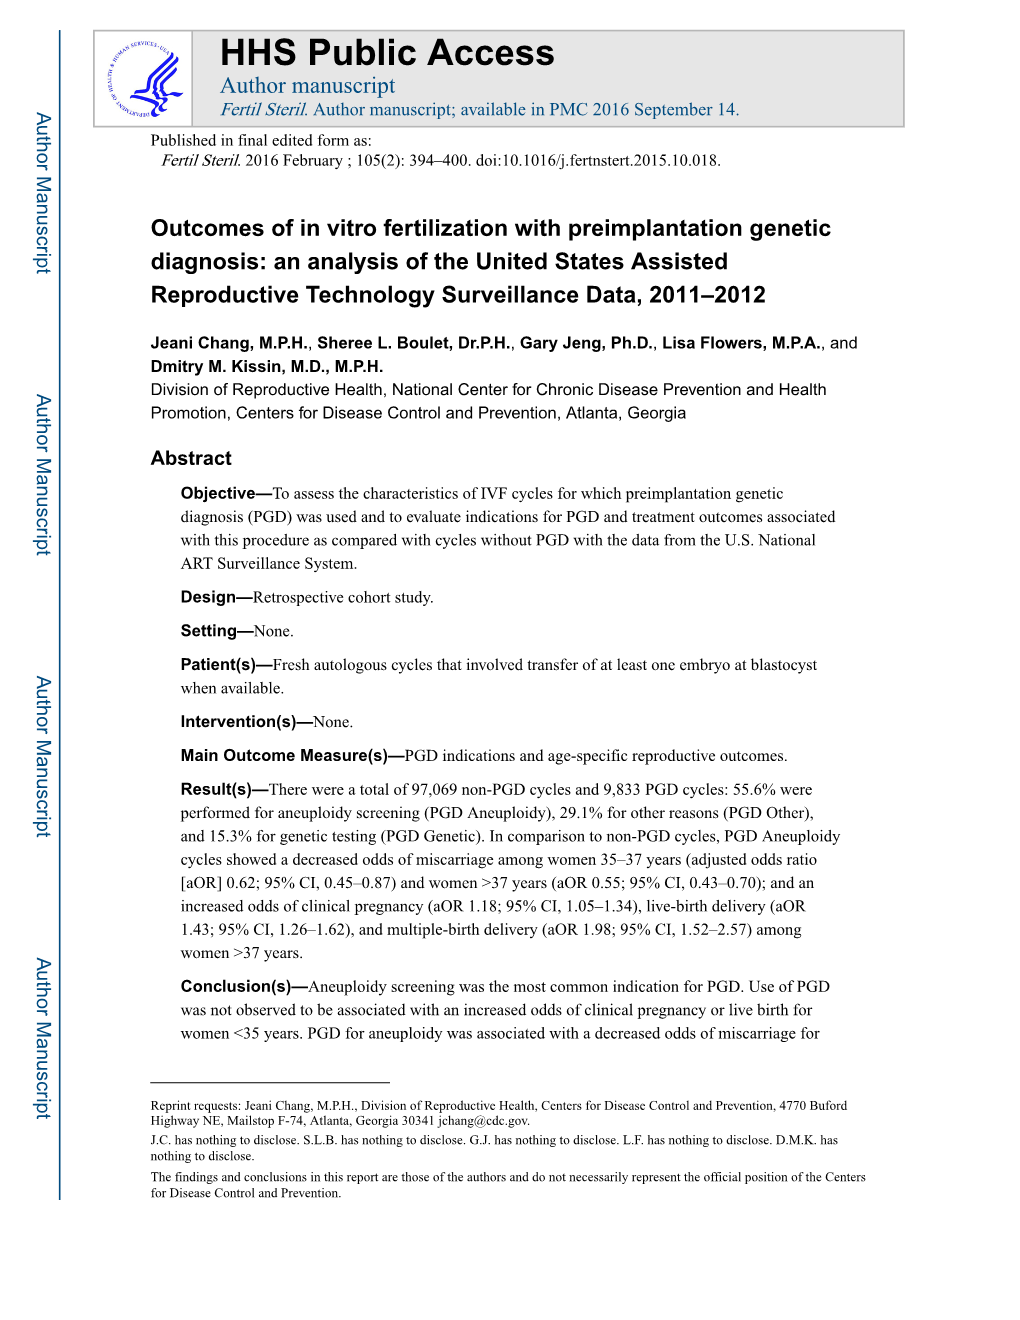 Outcomes of in Vitro Fertilization with Preimplantation Genetic Diagnosis